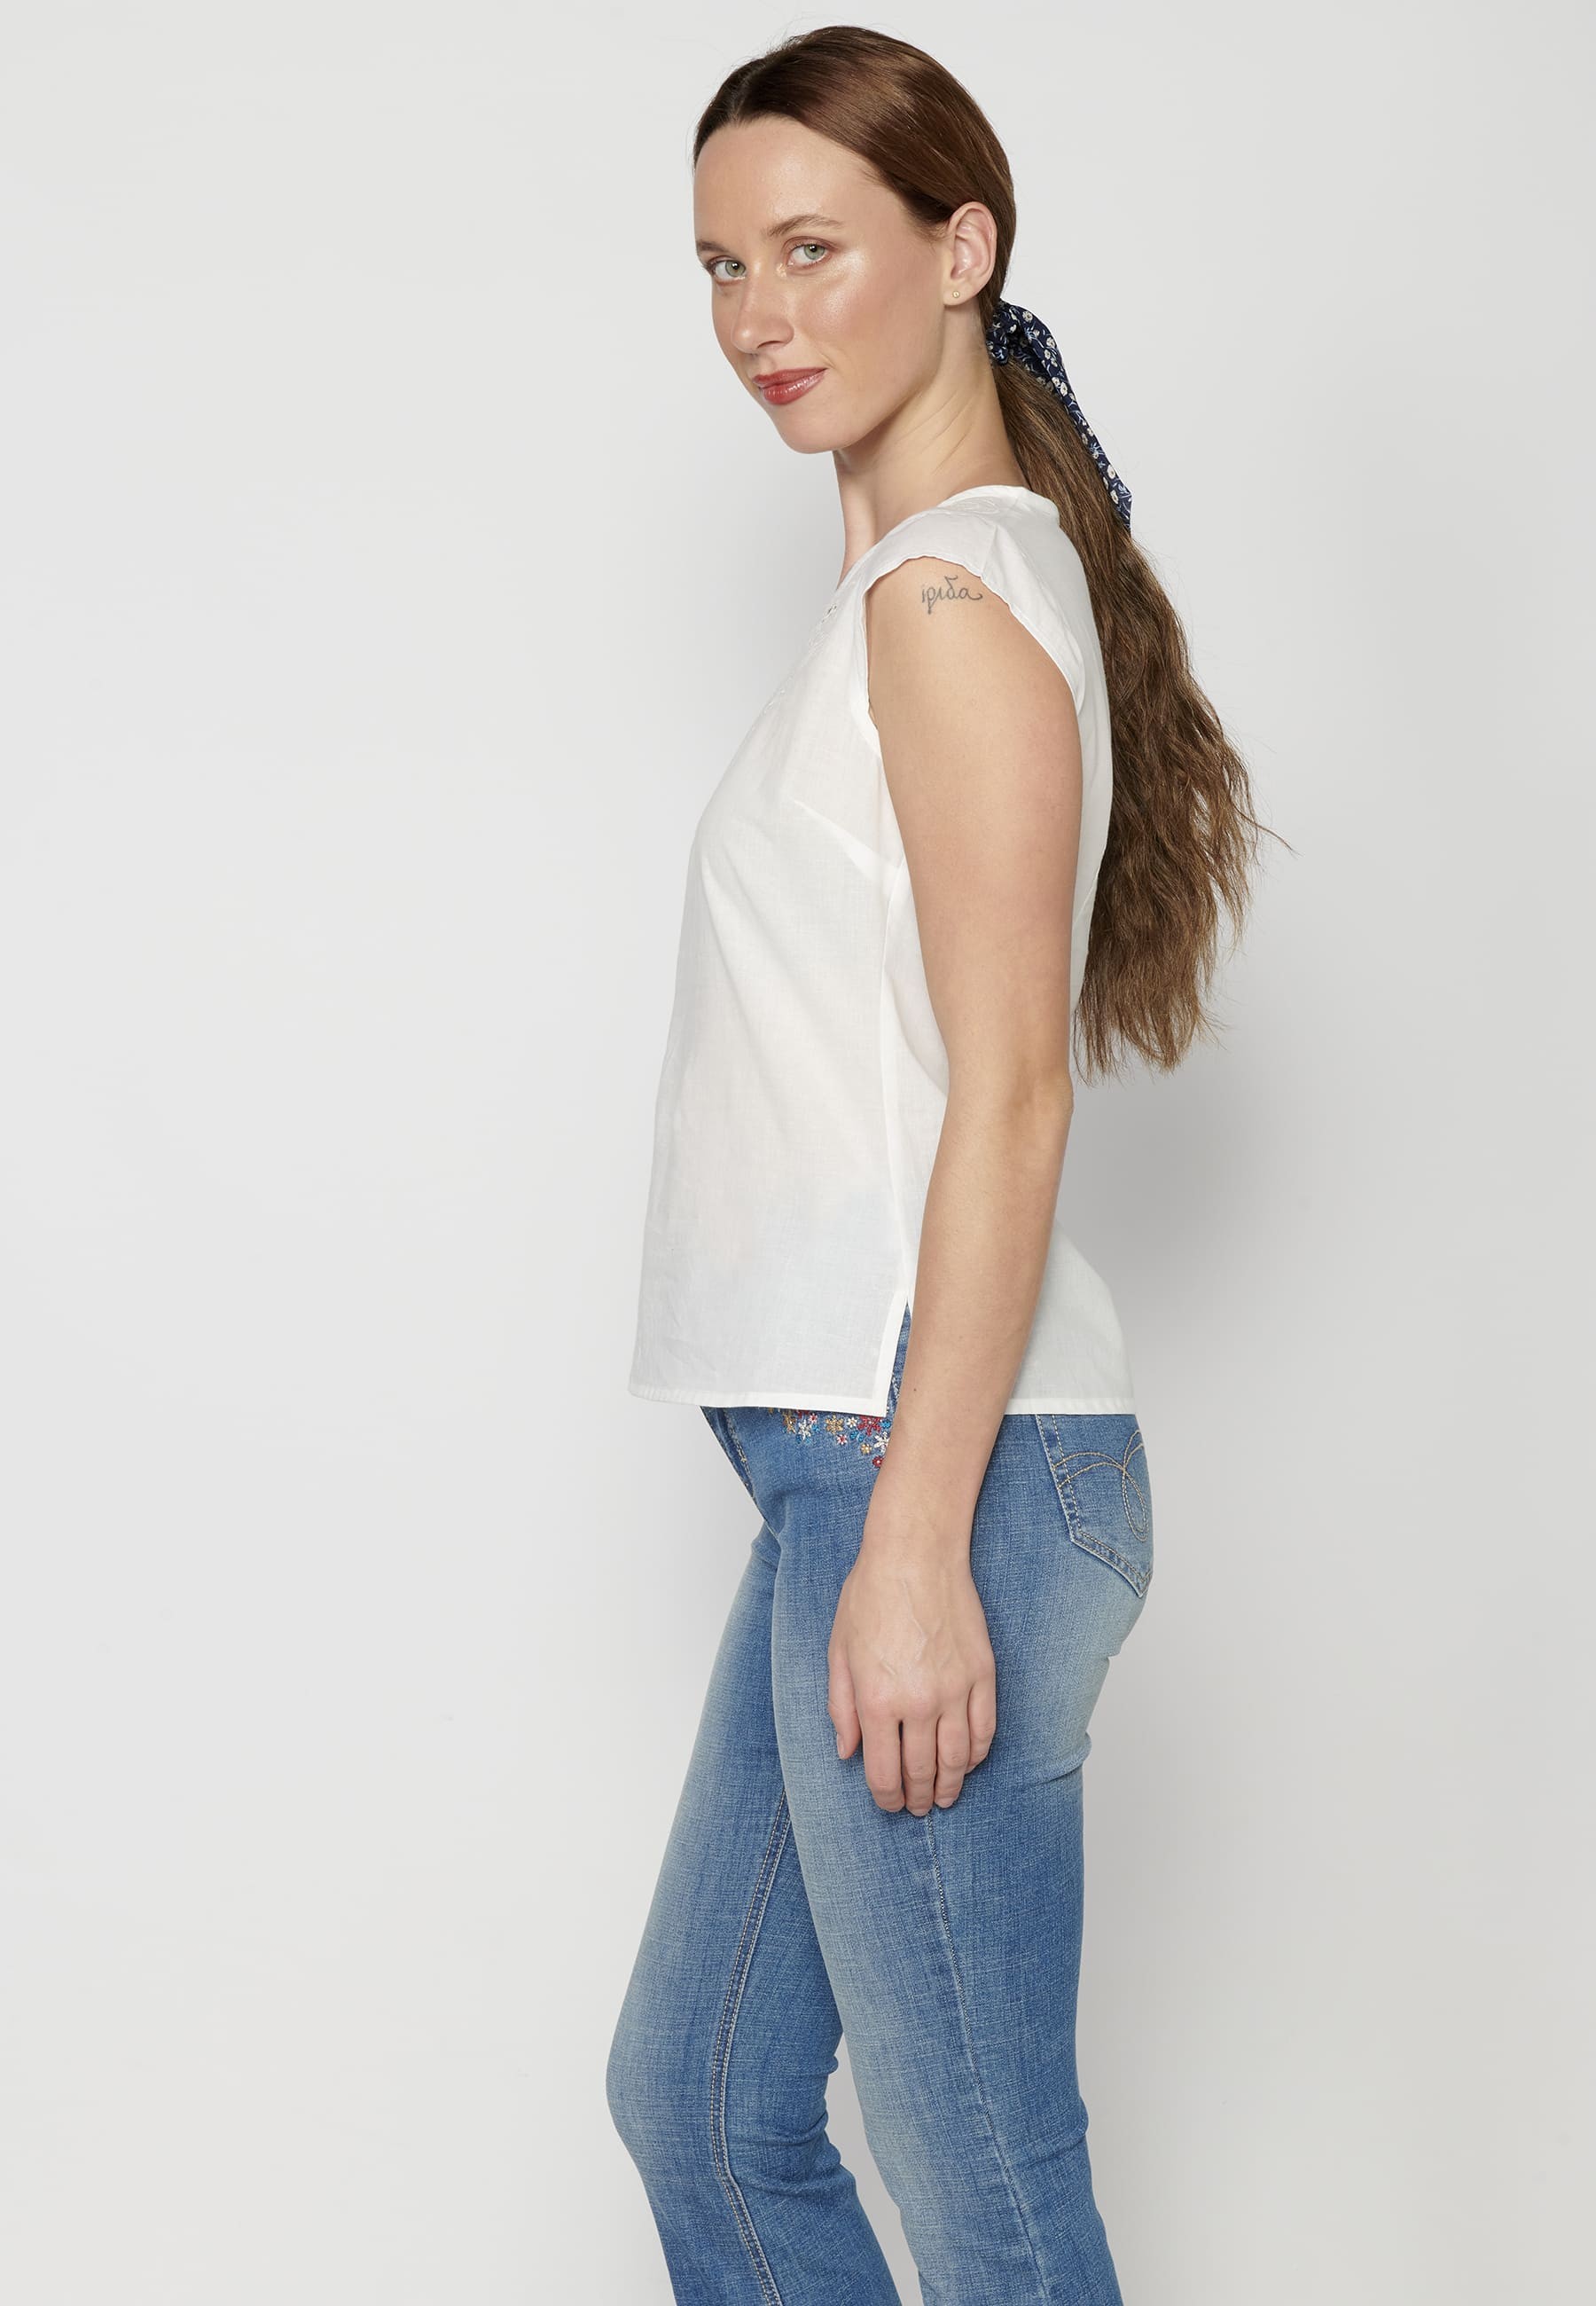 Blusa manga corta de Algodón de color Blanco para Mujer